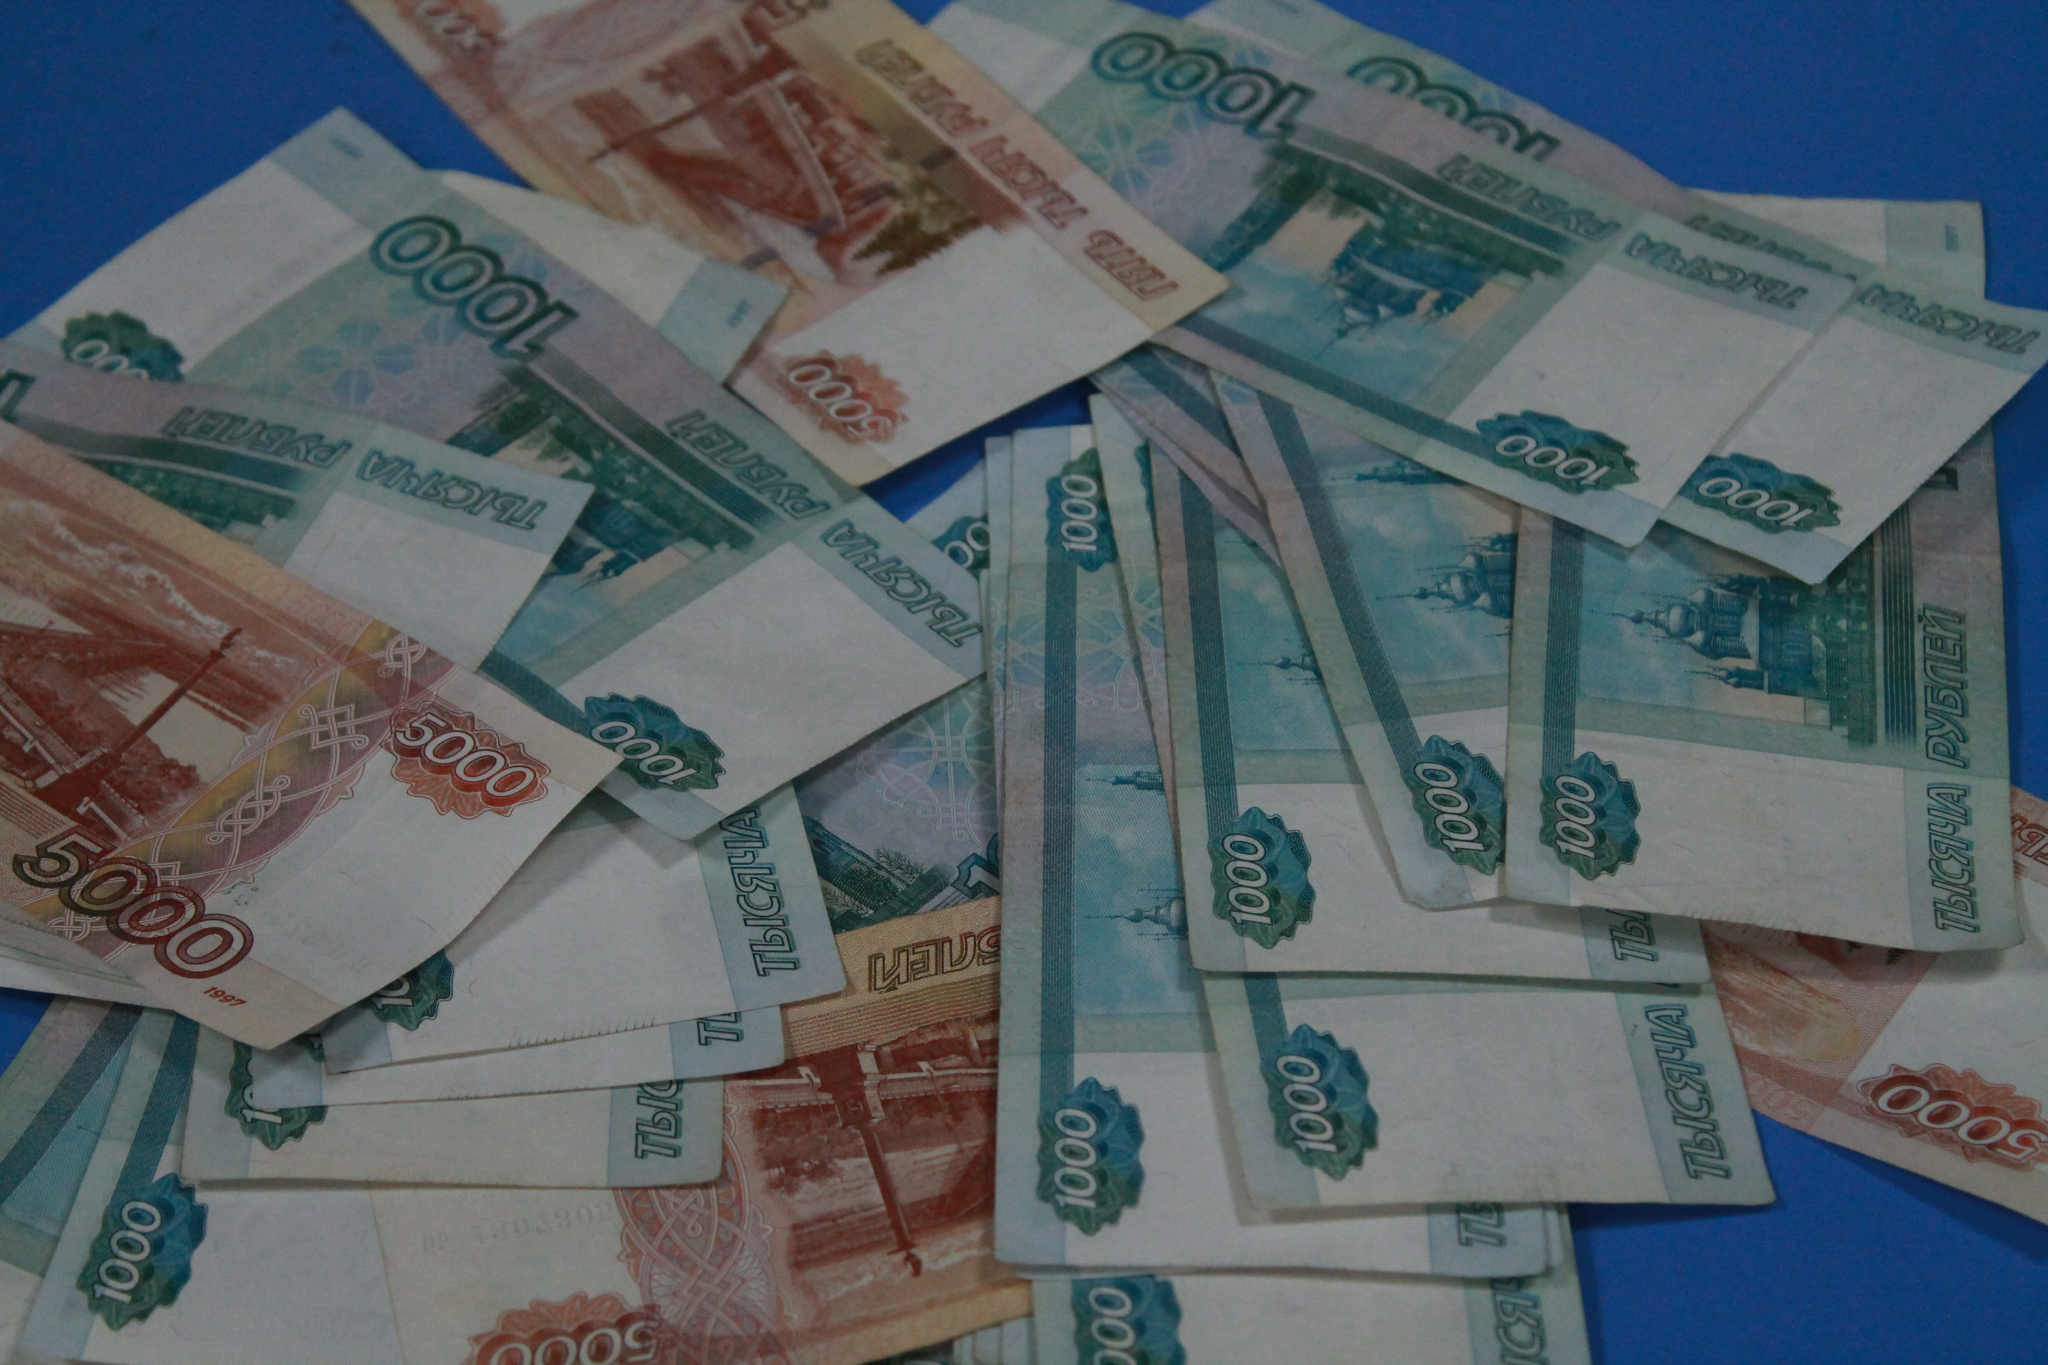 Нижегородский предприниматель незаконно перечислил 10,8 миллиона рублей китайскому контрагенту